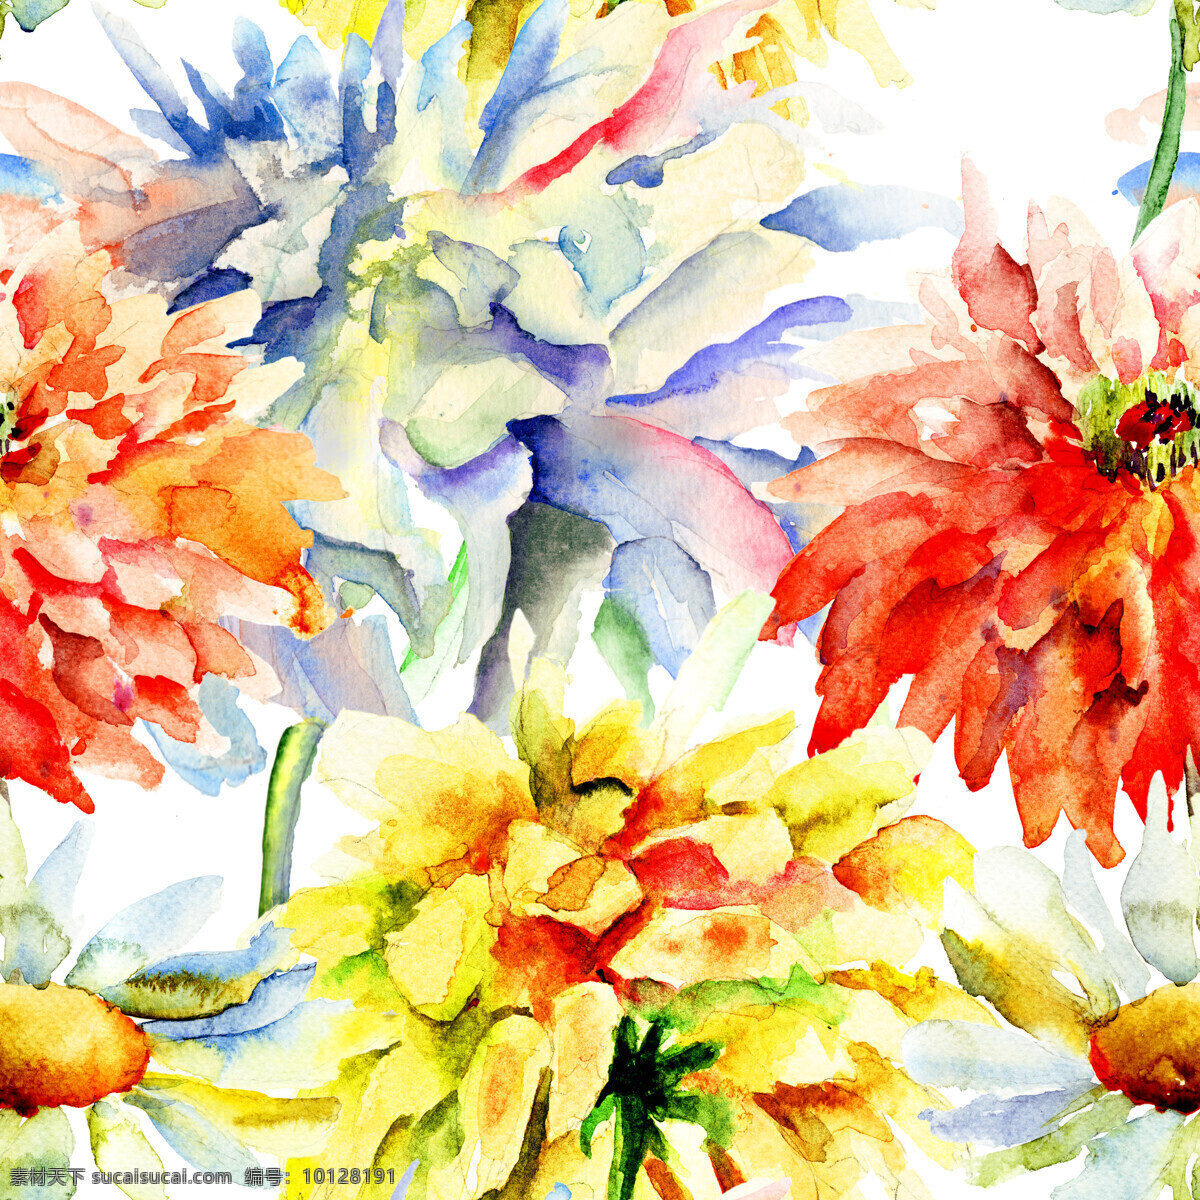 漂亮 花朵 水彩画 背景 素材图片 漂亮的花朵 花卉 植物 背景素材 花草树木 生物世界